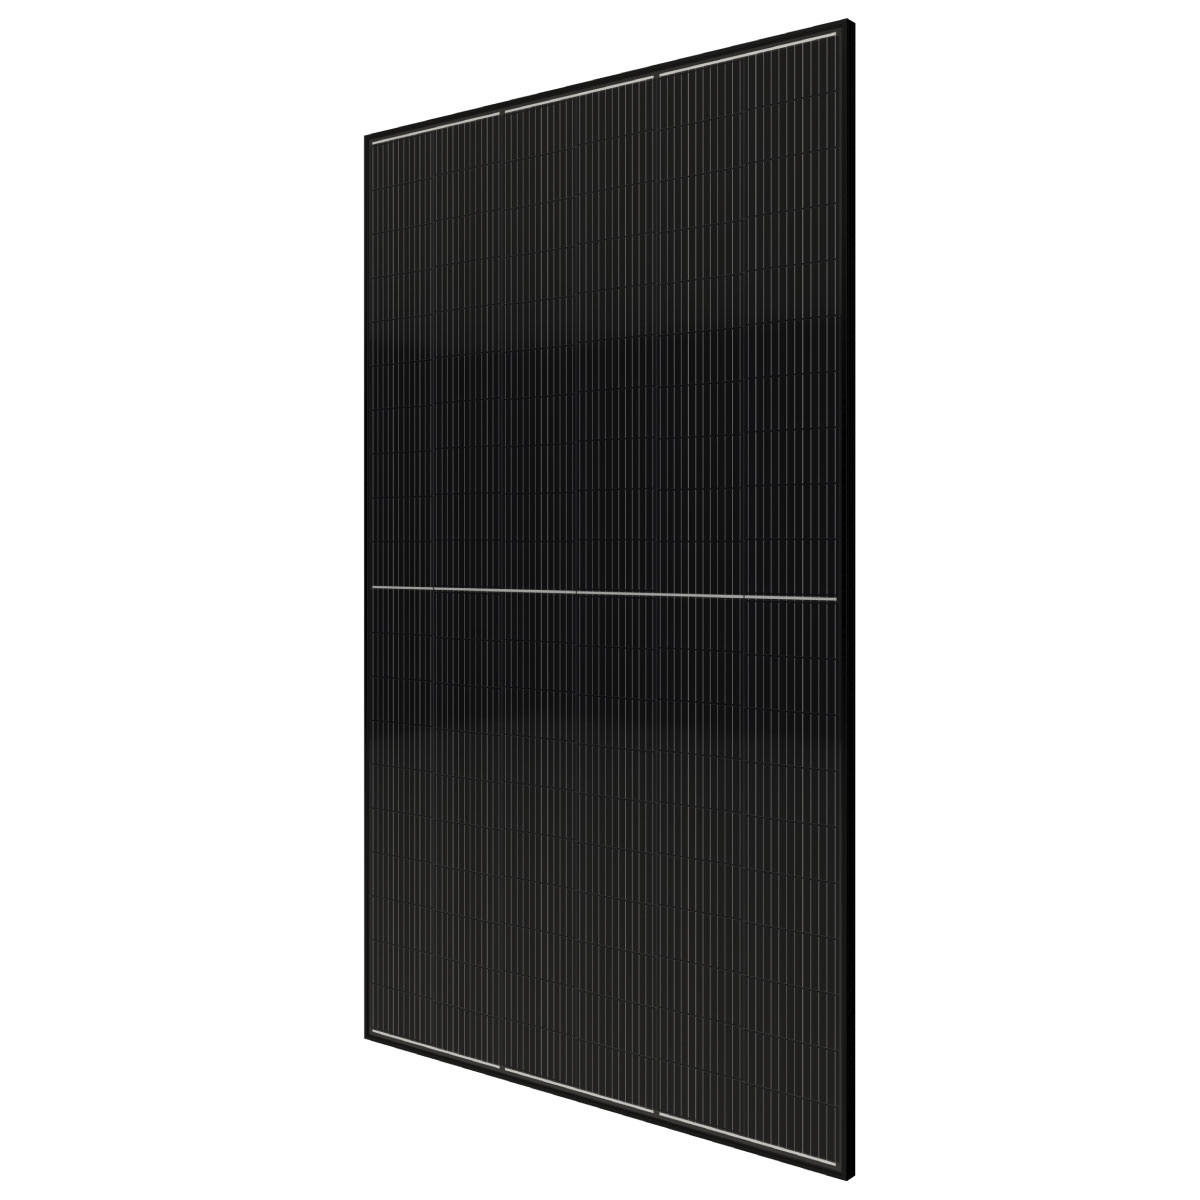 TommaTech 595Wp 120PM M12 Full Black Güneş Paneli